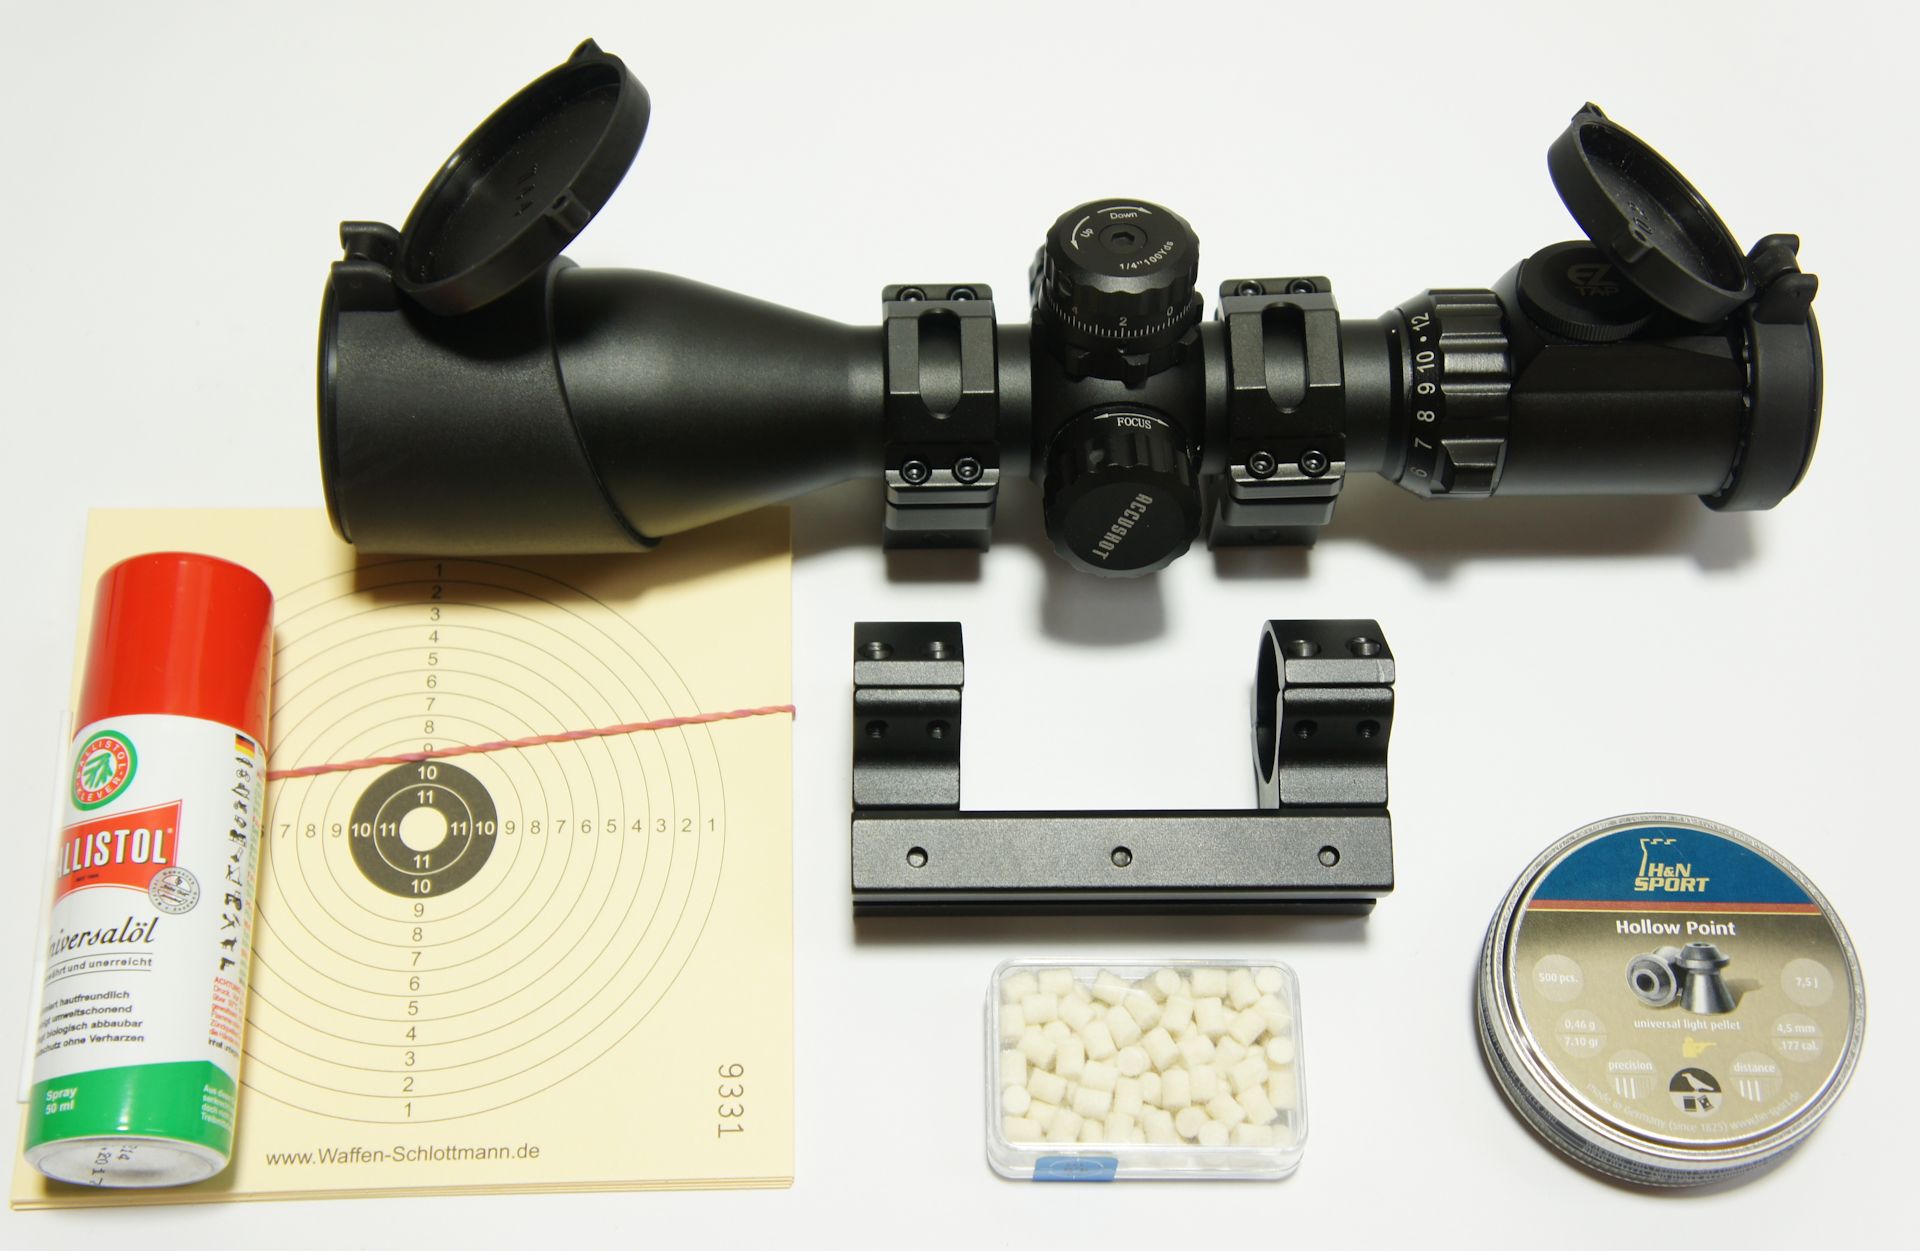 RTU Erweiterung auf Set mit Zielfernrohr UTG Compact 3-12x44 am Luftgewehr HW 77 + inkl. Montage und Einschieen